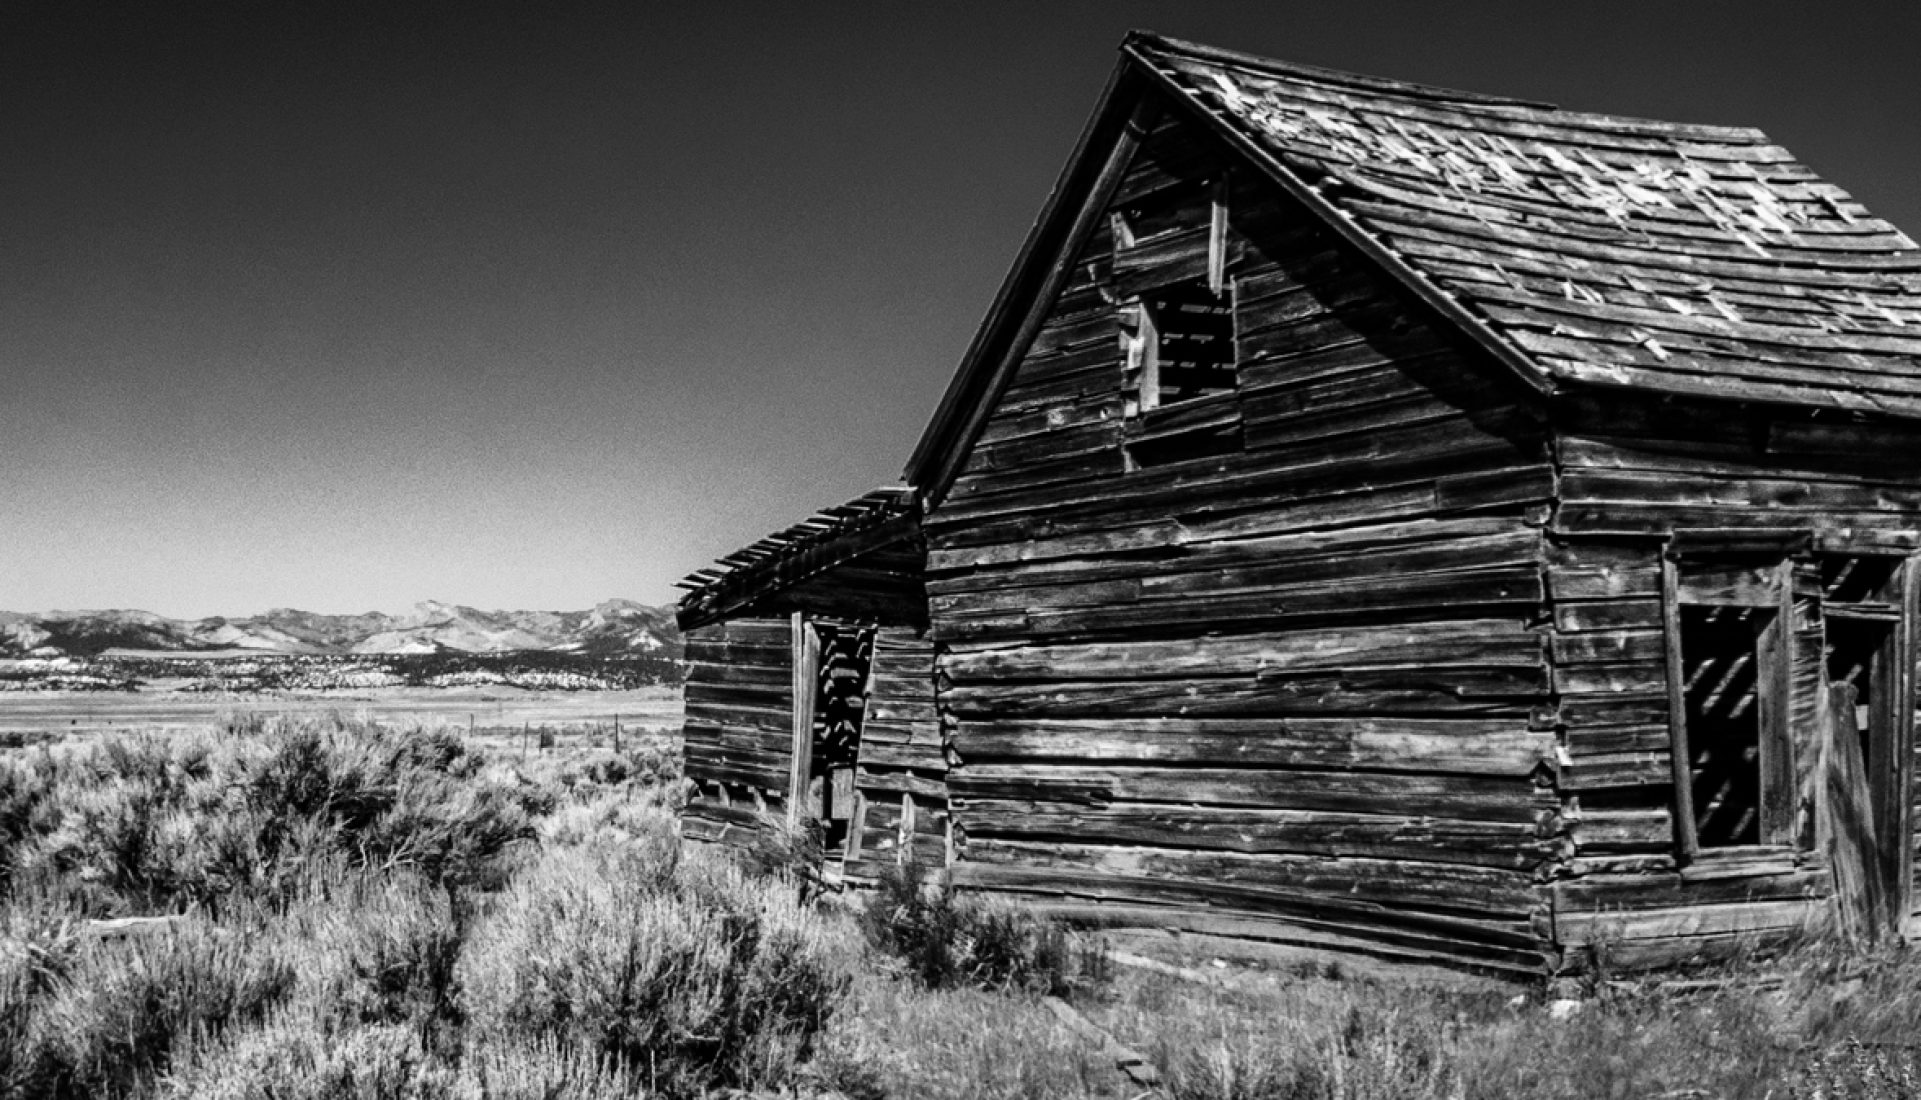 Widtsoe, Utah – a Ghost Town